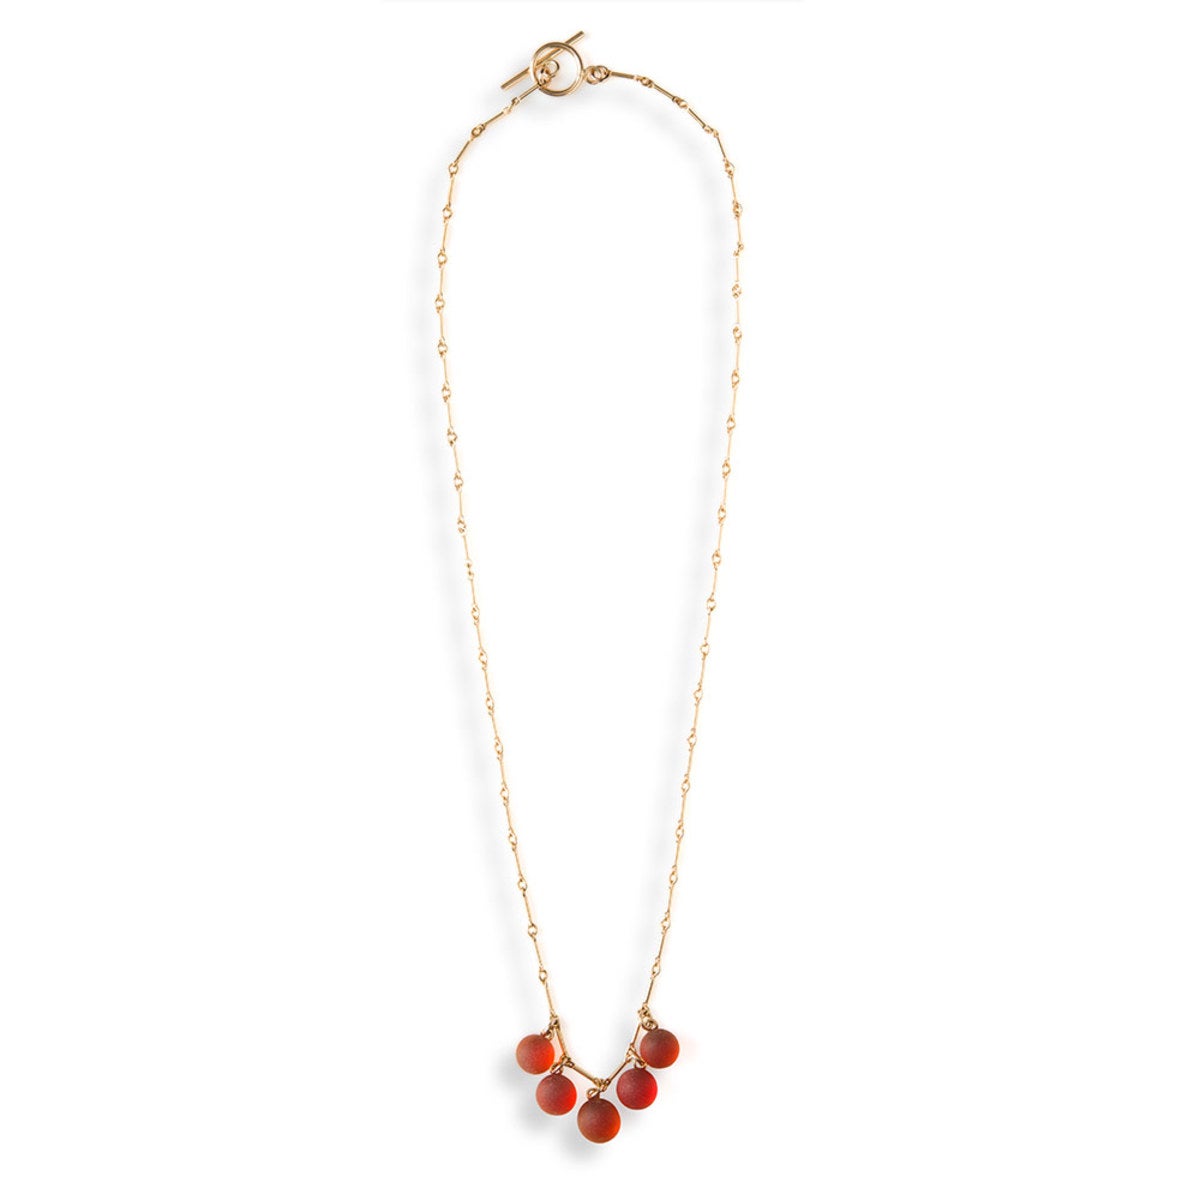 5-Stone Sea Glass Necklace - Red Multi